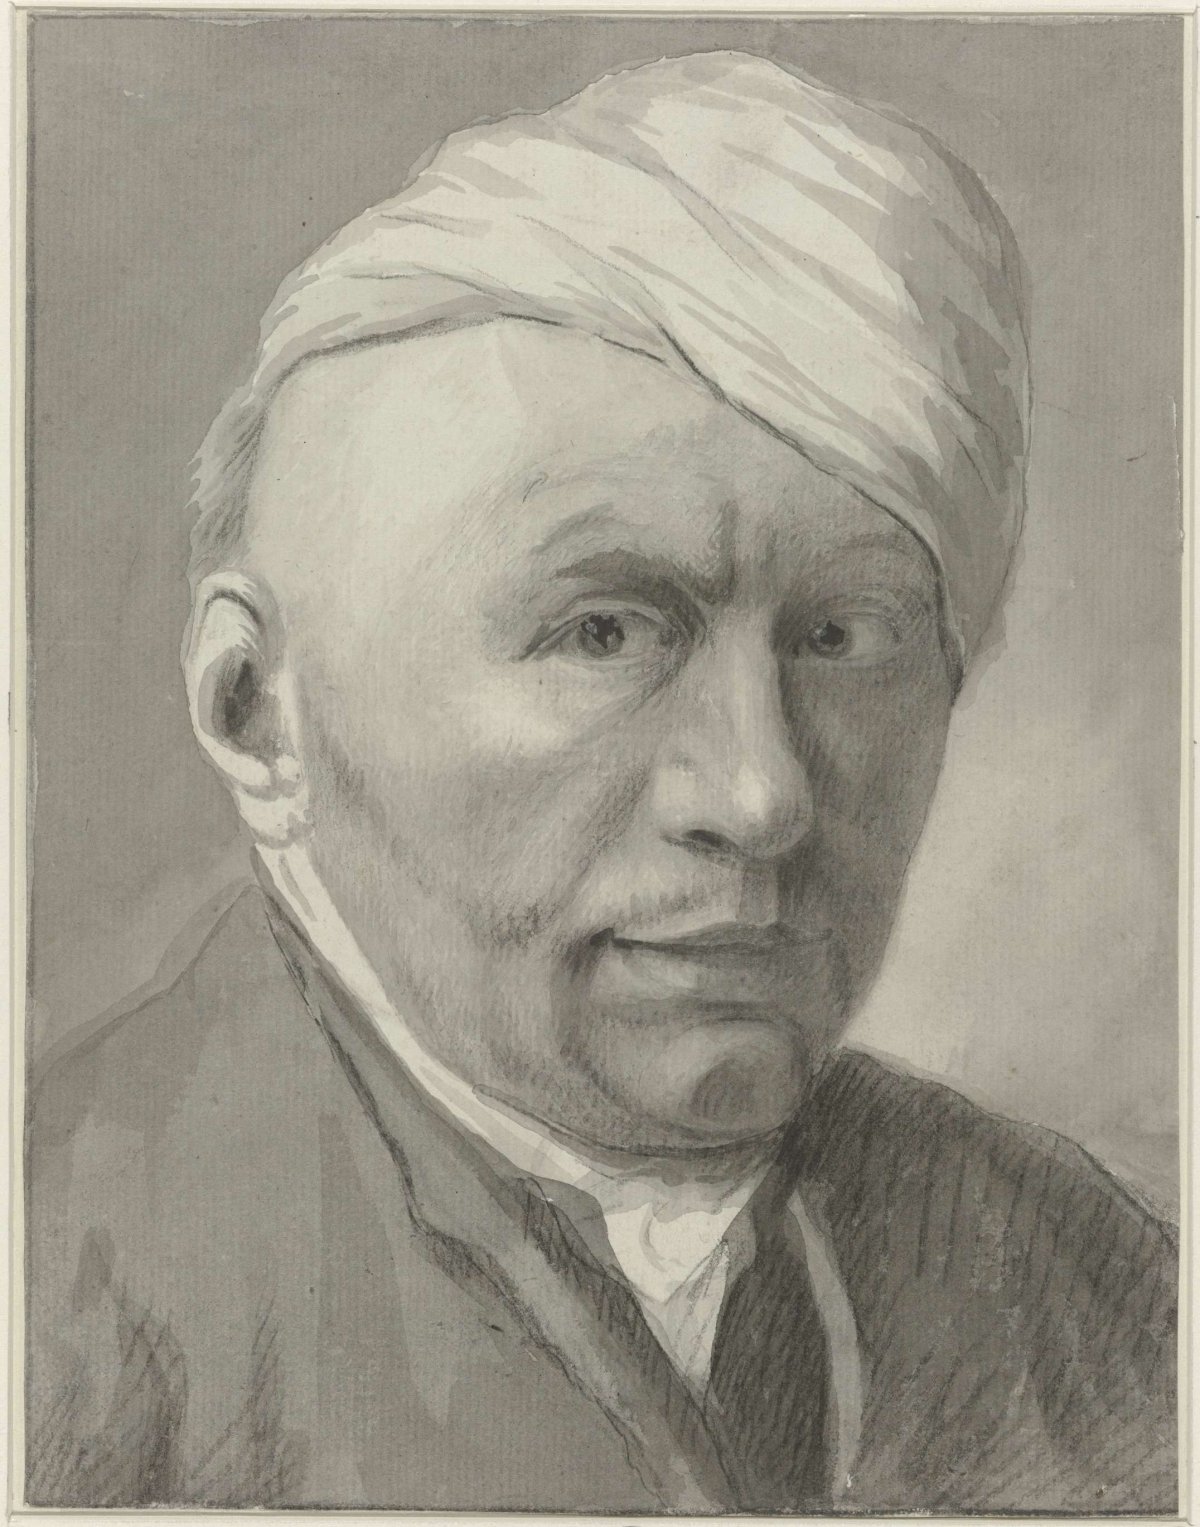 Self-portrait of illustrator Harmanus van Tuylen, wearing hat, Harmanus Tuylen, 1700 - 1800